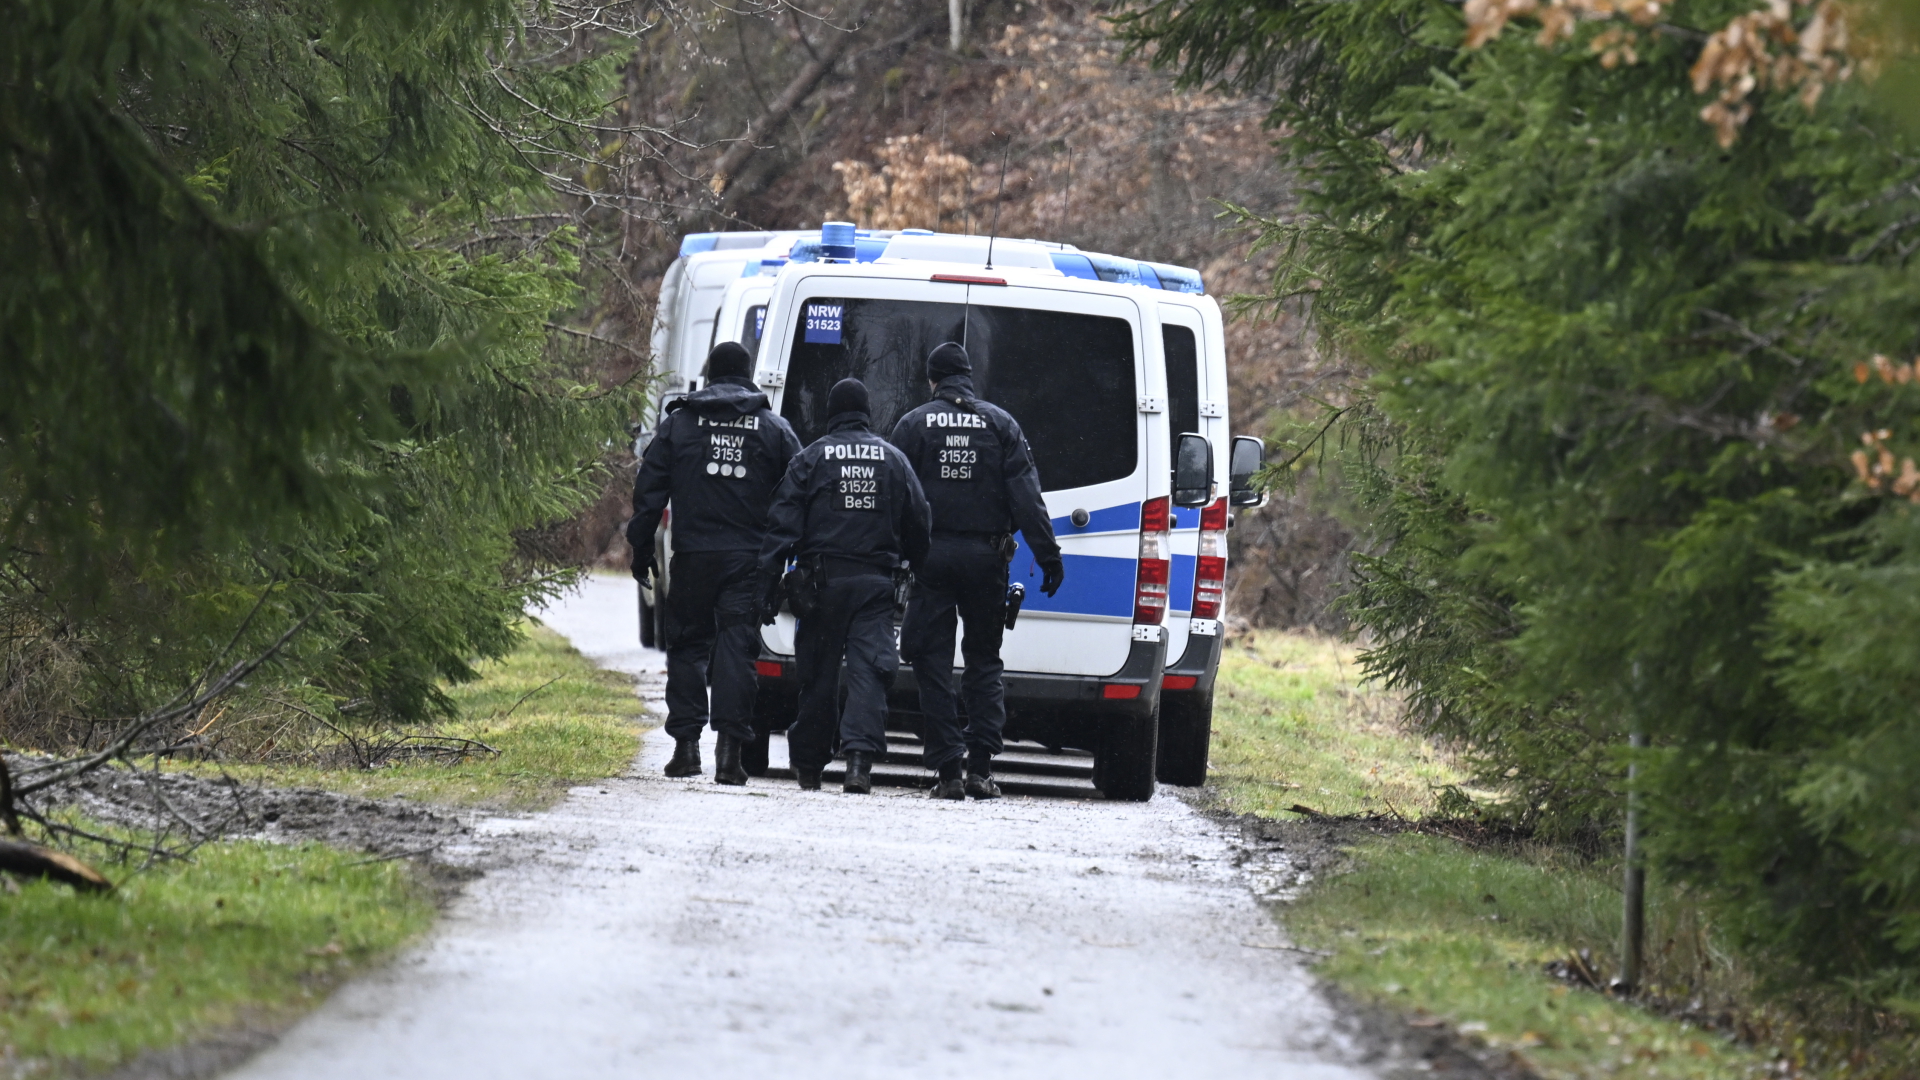 Polizisten suchen in Freudenberg in der Nähe des Fundorts des ermordeten Mädchens Luise nach weiteren Hinweisen. | dp